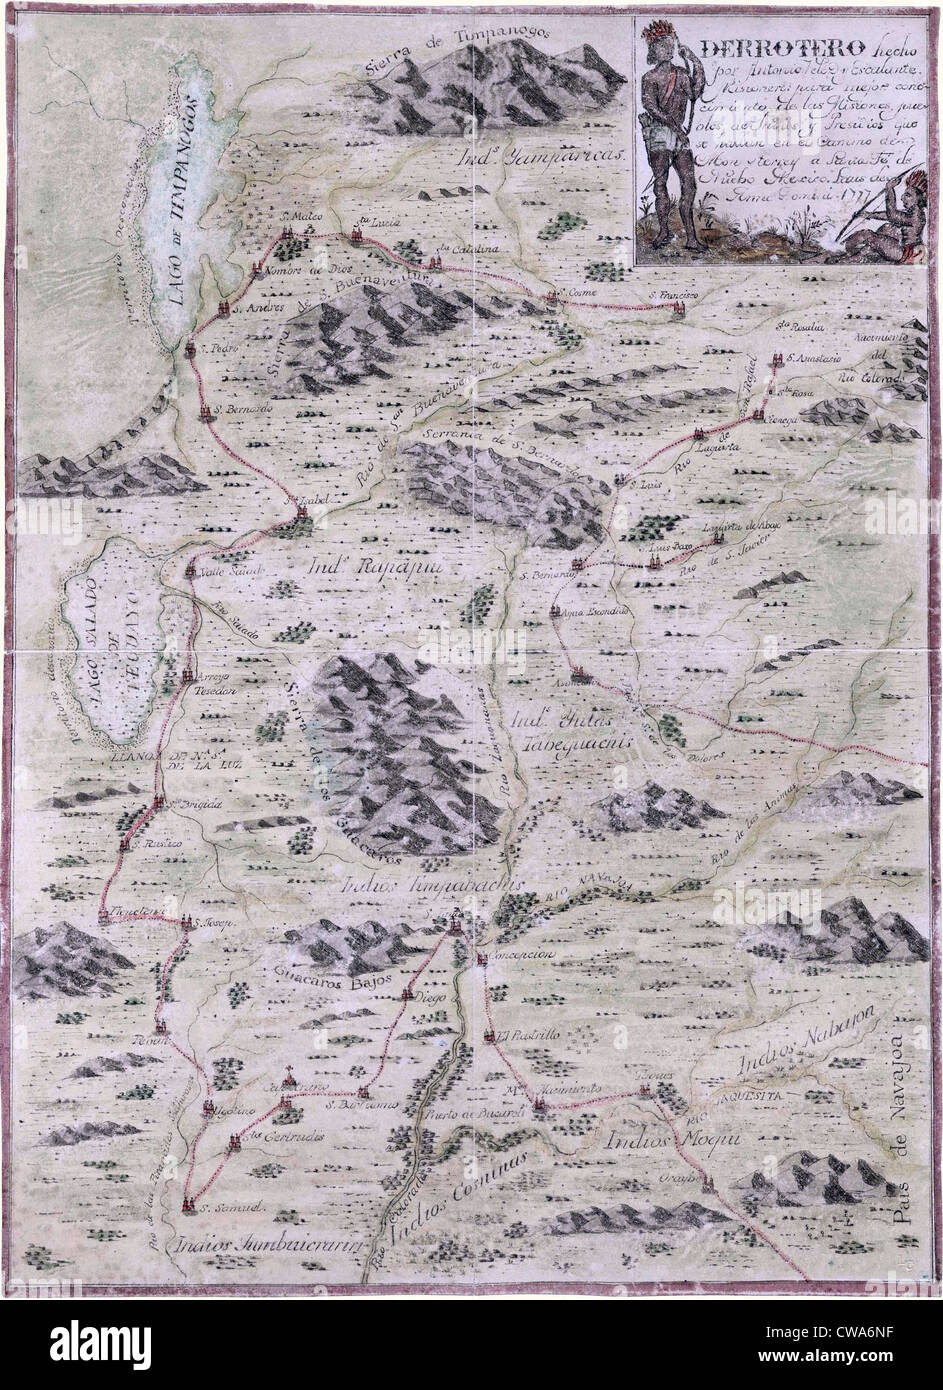 1777-Karte, die Teile von Colorado, Utah, Arizona und New Mexico, zeigt spanische Missionen, Indian Pueblos, Flüsse abdeckt und Stockfoto